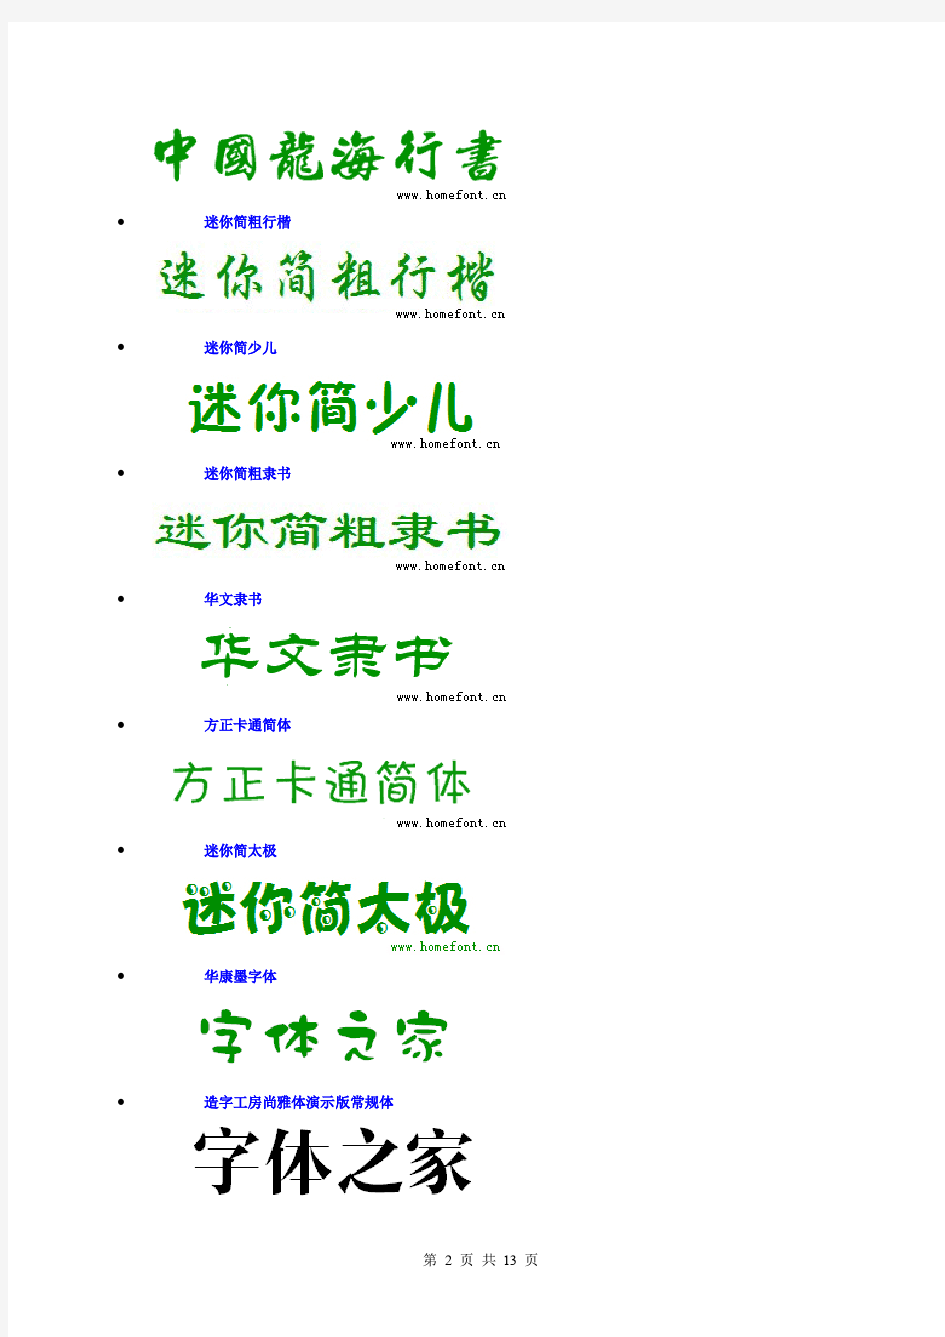 中英文字体样式对照表大全 